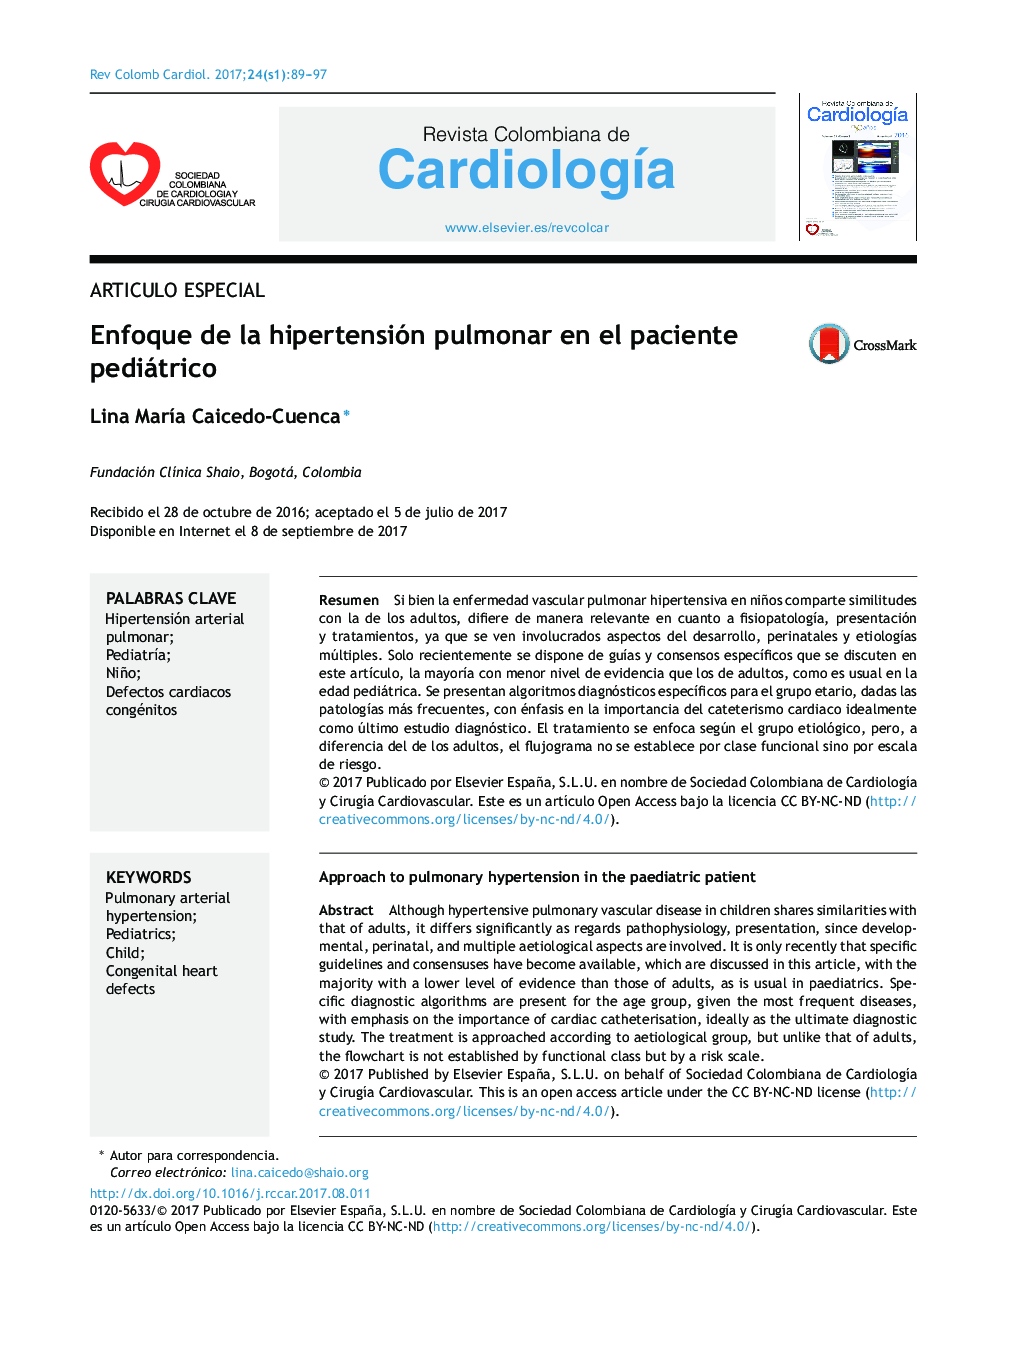 Articulo EspecialEnfoque de la hipertensión pulmonar en el paciente pediátricoApproach to pulmonary hypertension in the paediatric patient